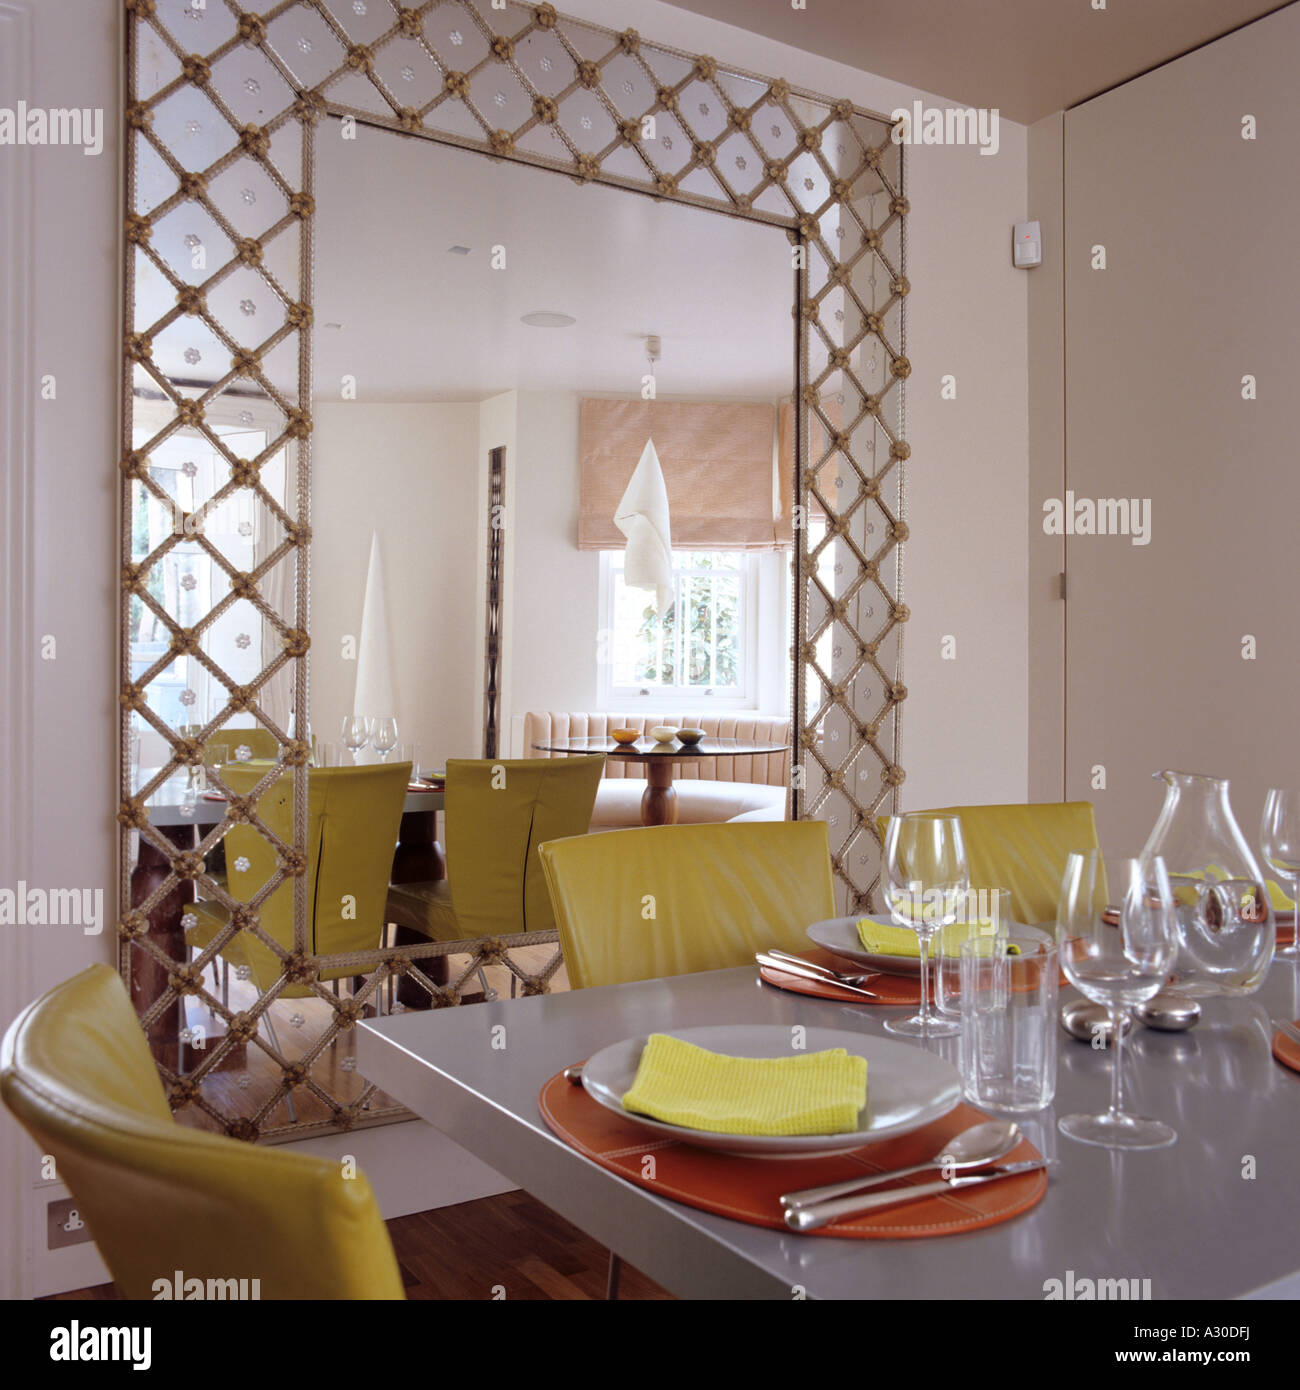 Übergroßer Spiegel mit Laubsägearbeiten im Esszimmer mit Tisch und  Lederstühlen gelb Stockfotografie - Alamy